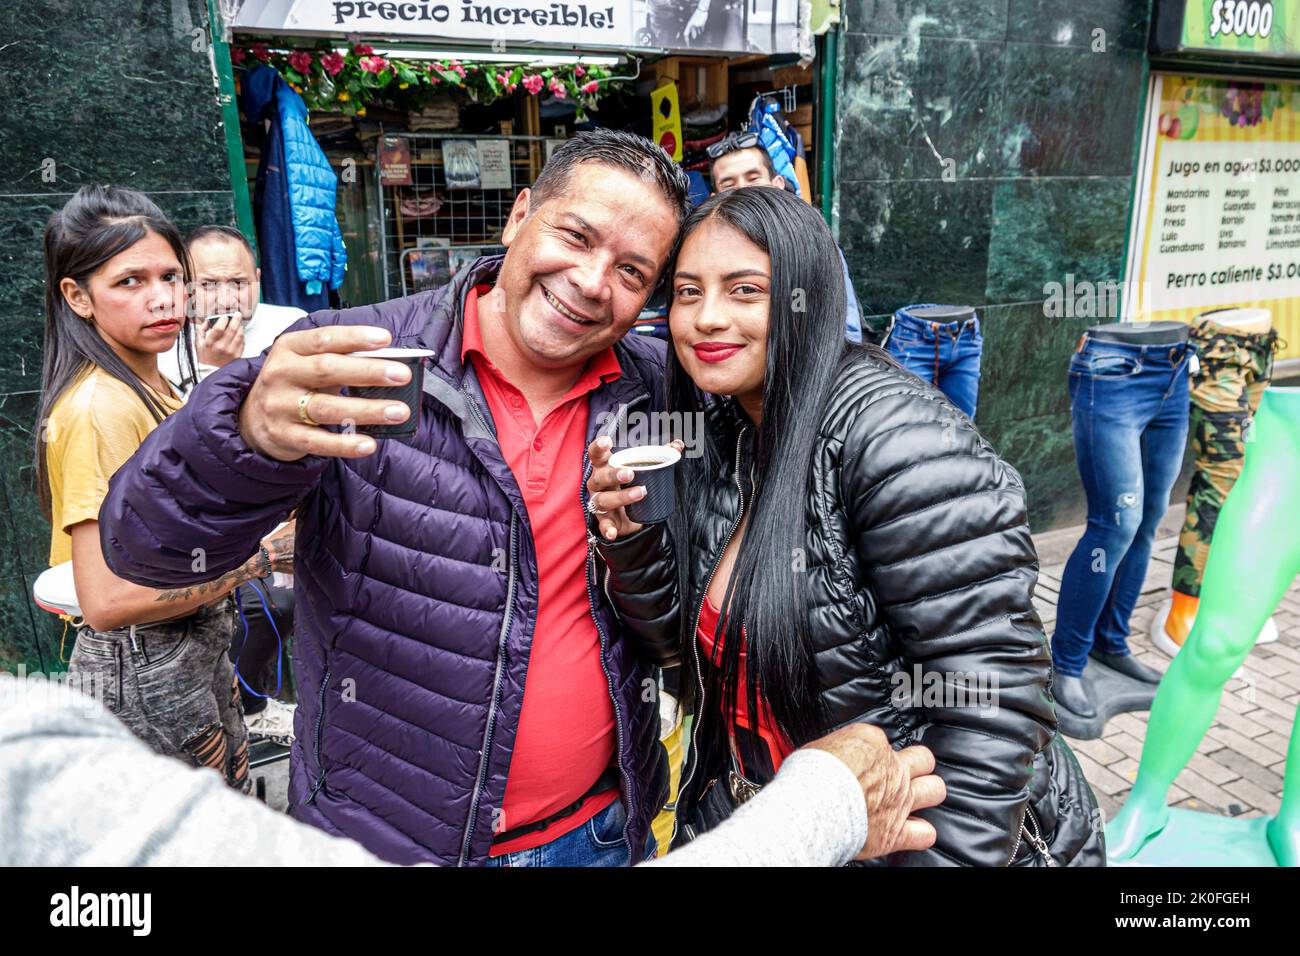 Bogota Colombie,San Victorino Carrera 10,vendeur de café souriant couple boire du thé à la cannelle, homme hommes femme femme femme femme femme colombienne Colombiens Hispa Banque D'Images